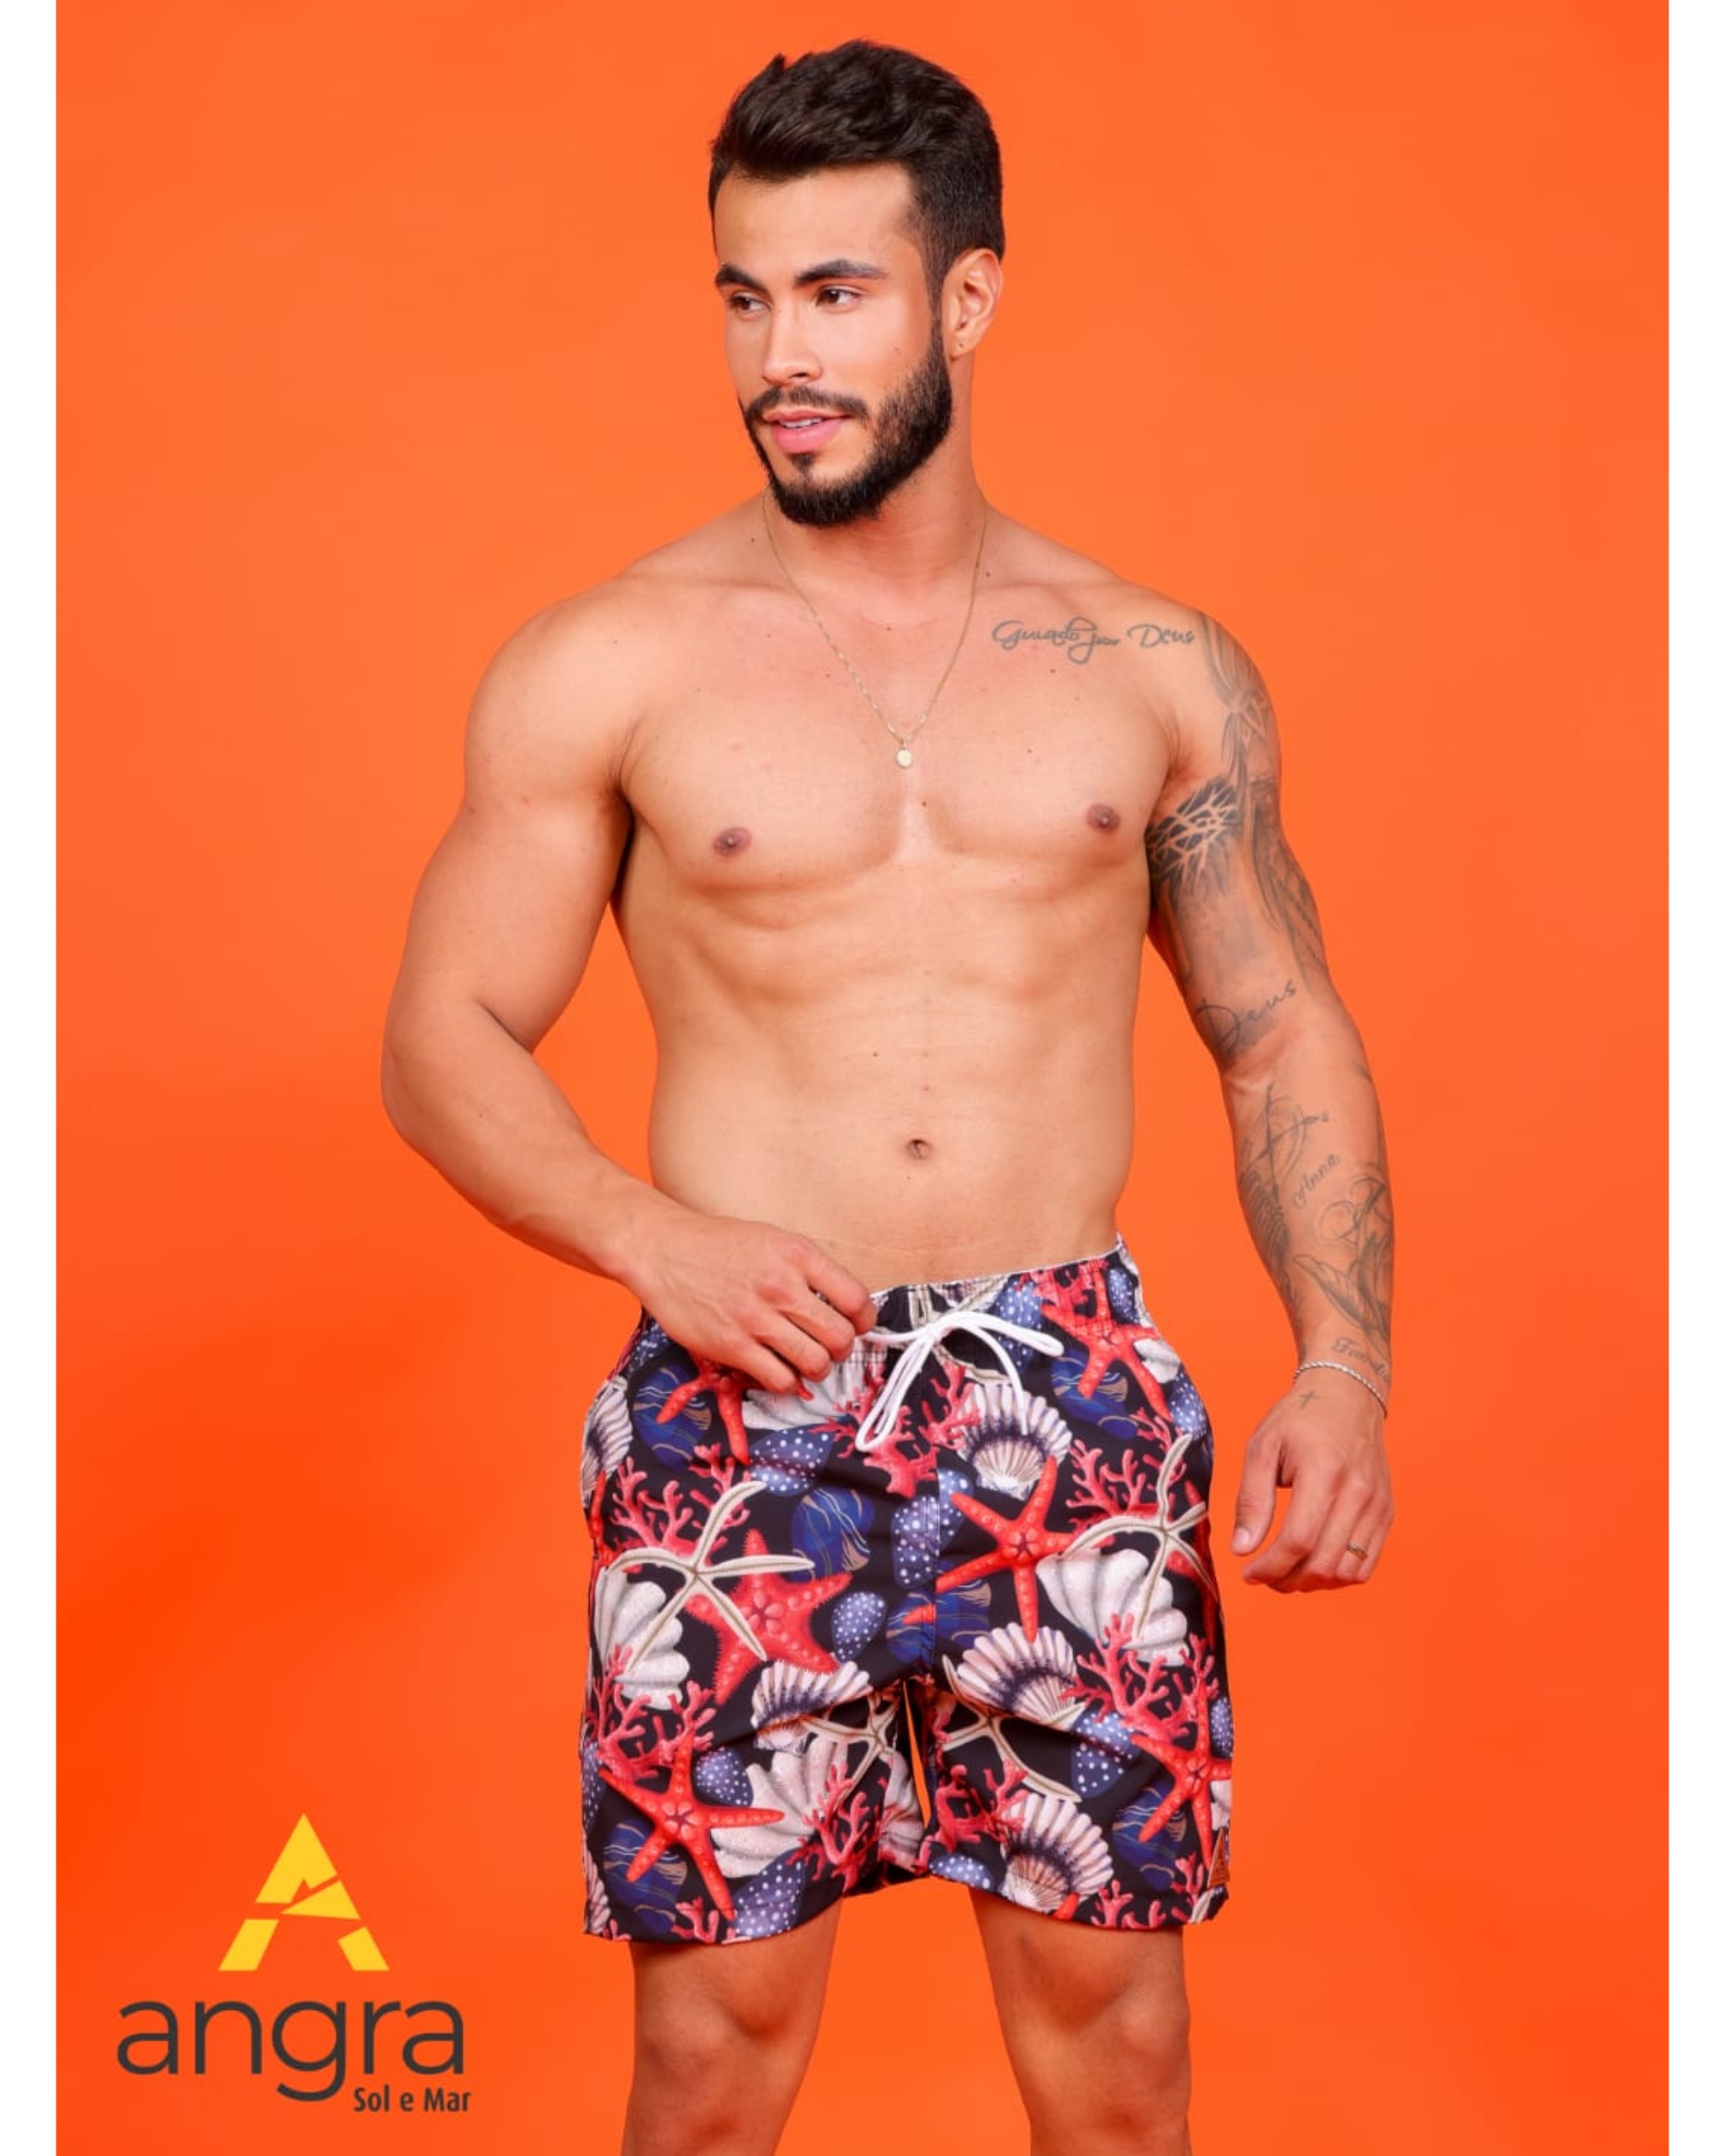 Kit Masculino Camiseta + Bermuda Estampada Em Tactel G - Compre Agora -  Feira da Madrugada SP